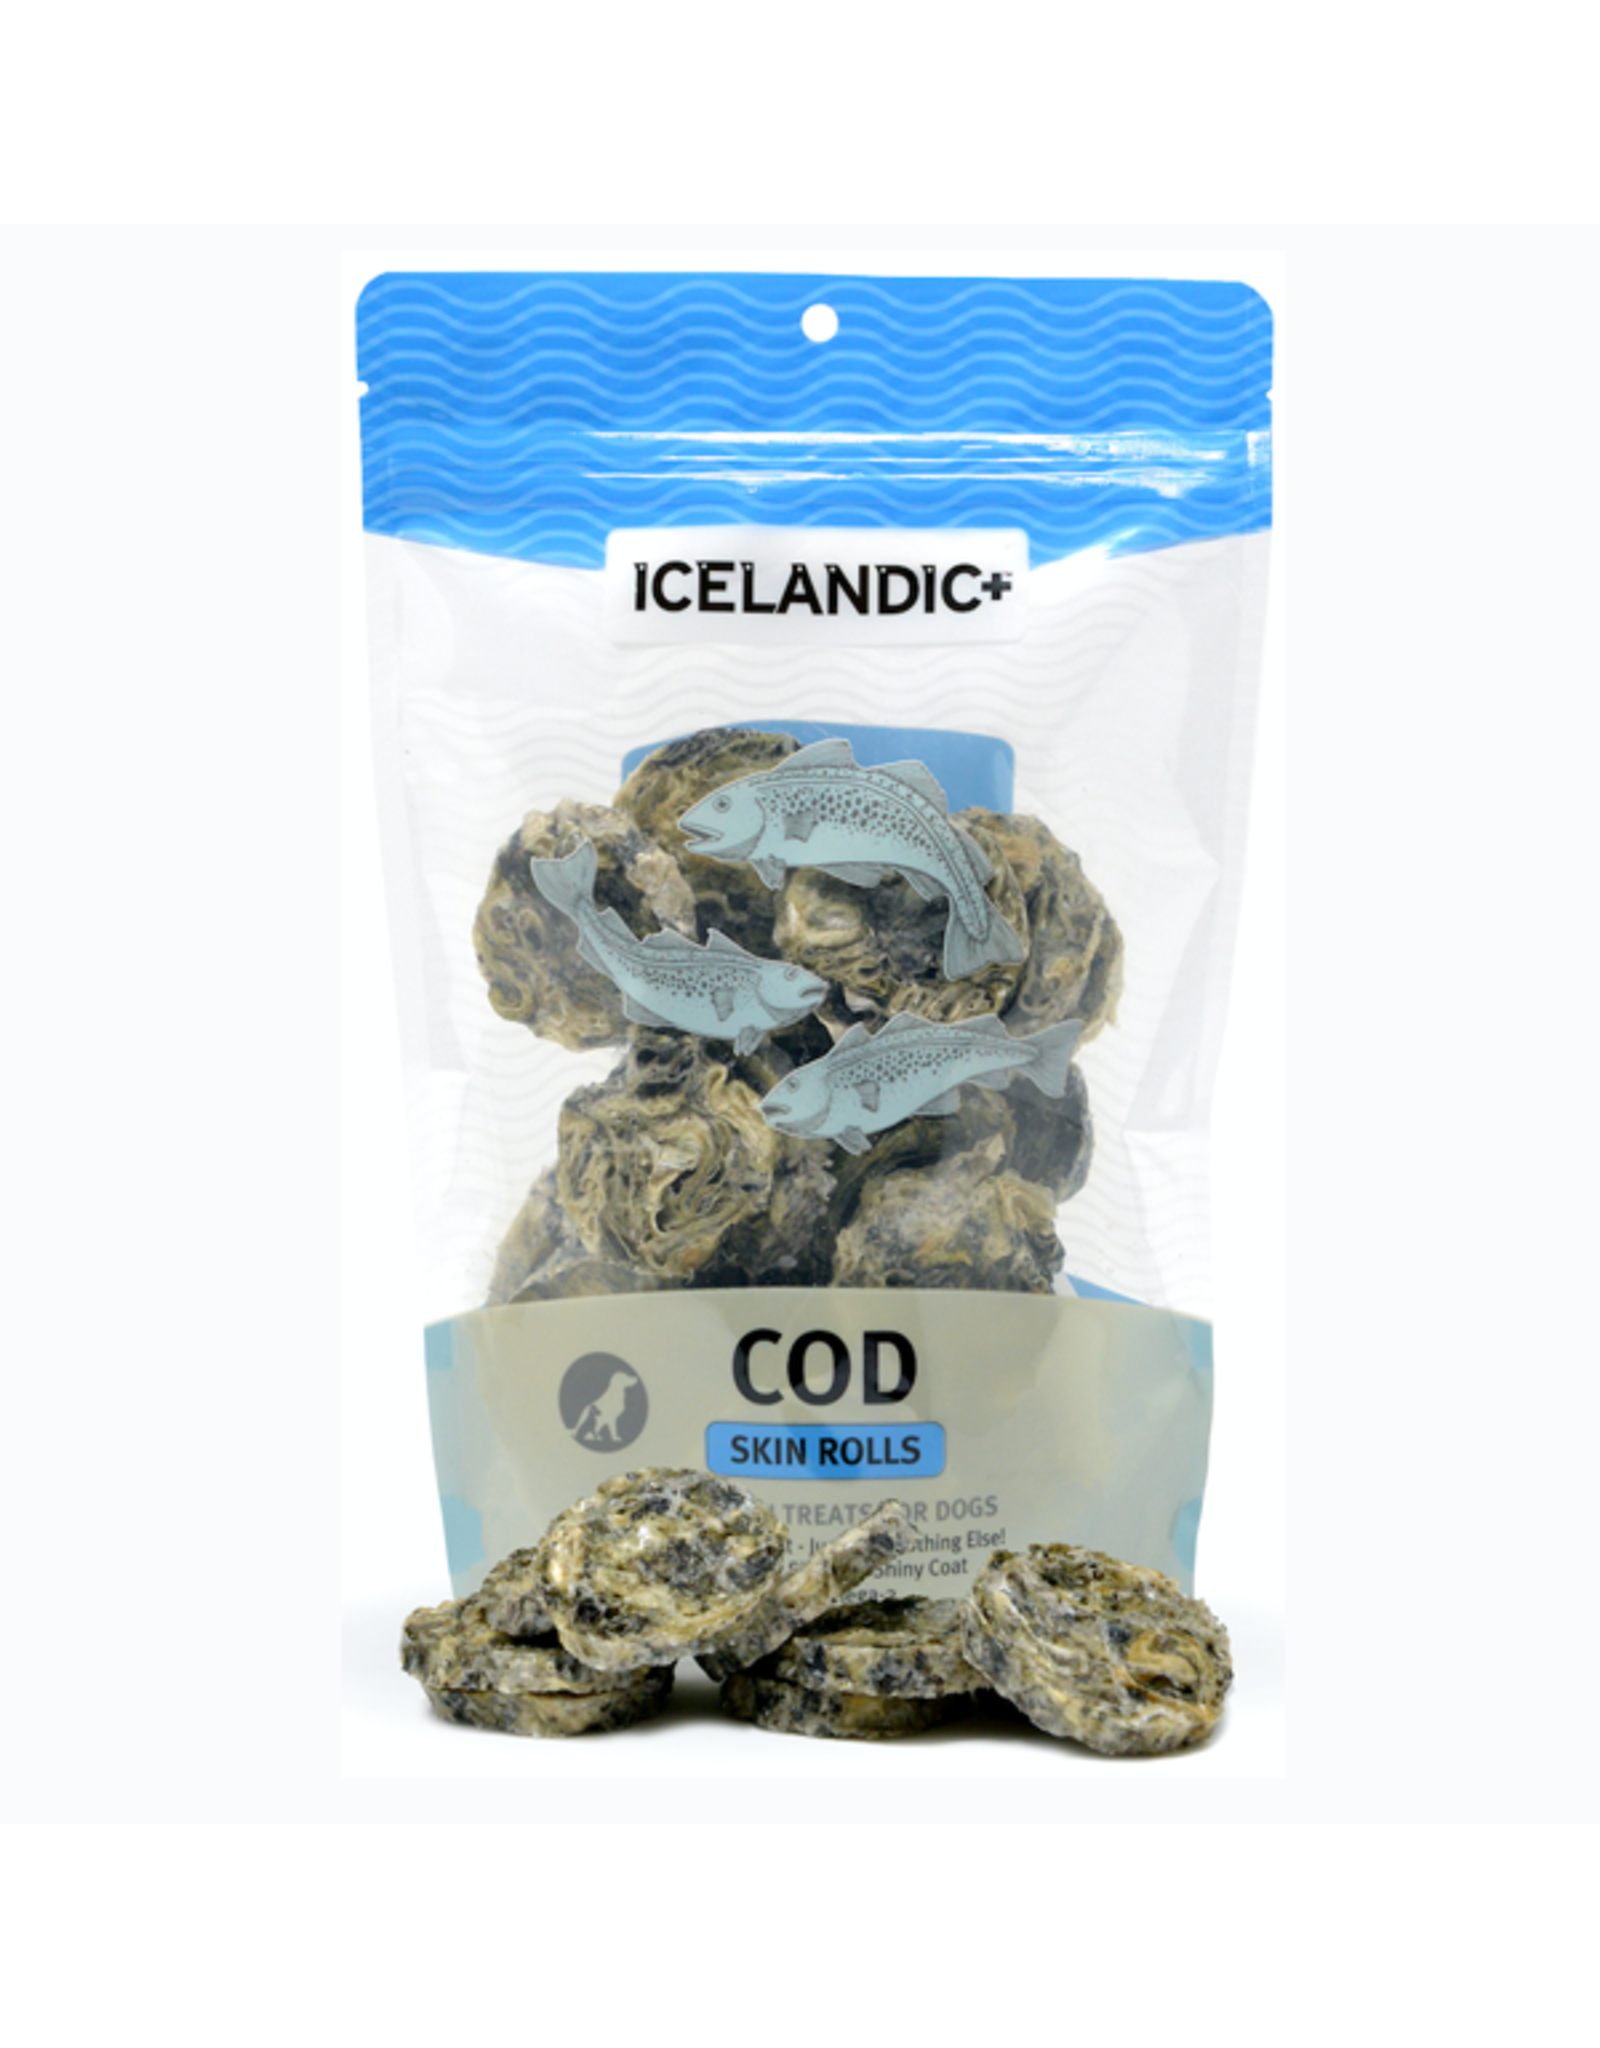 Icelandic+ Cod Skin Rolls 3 oz